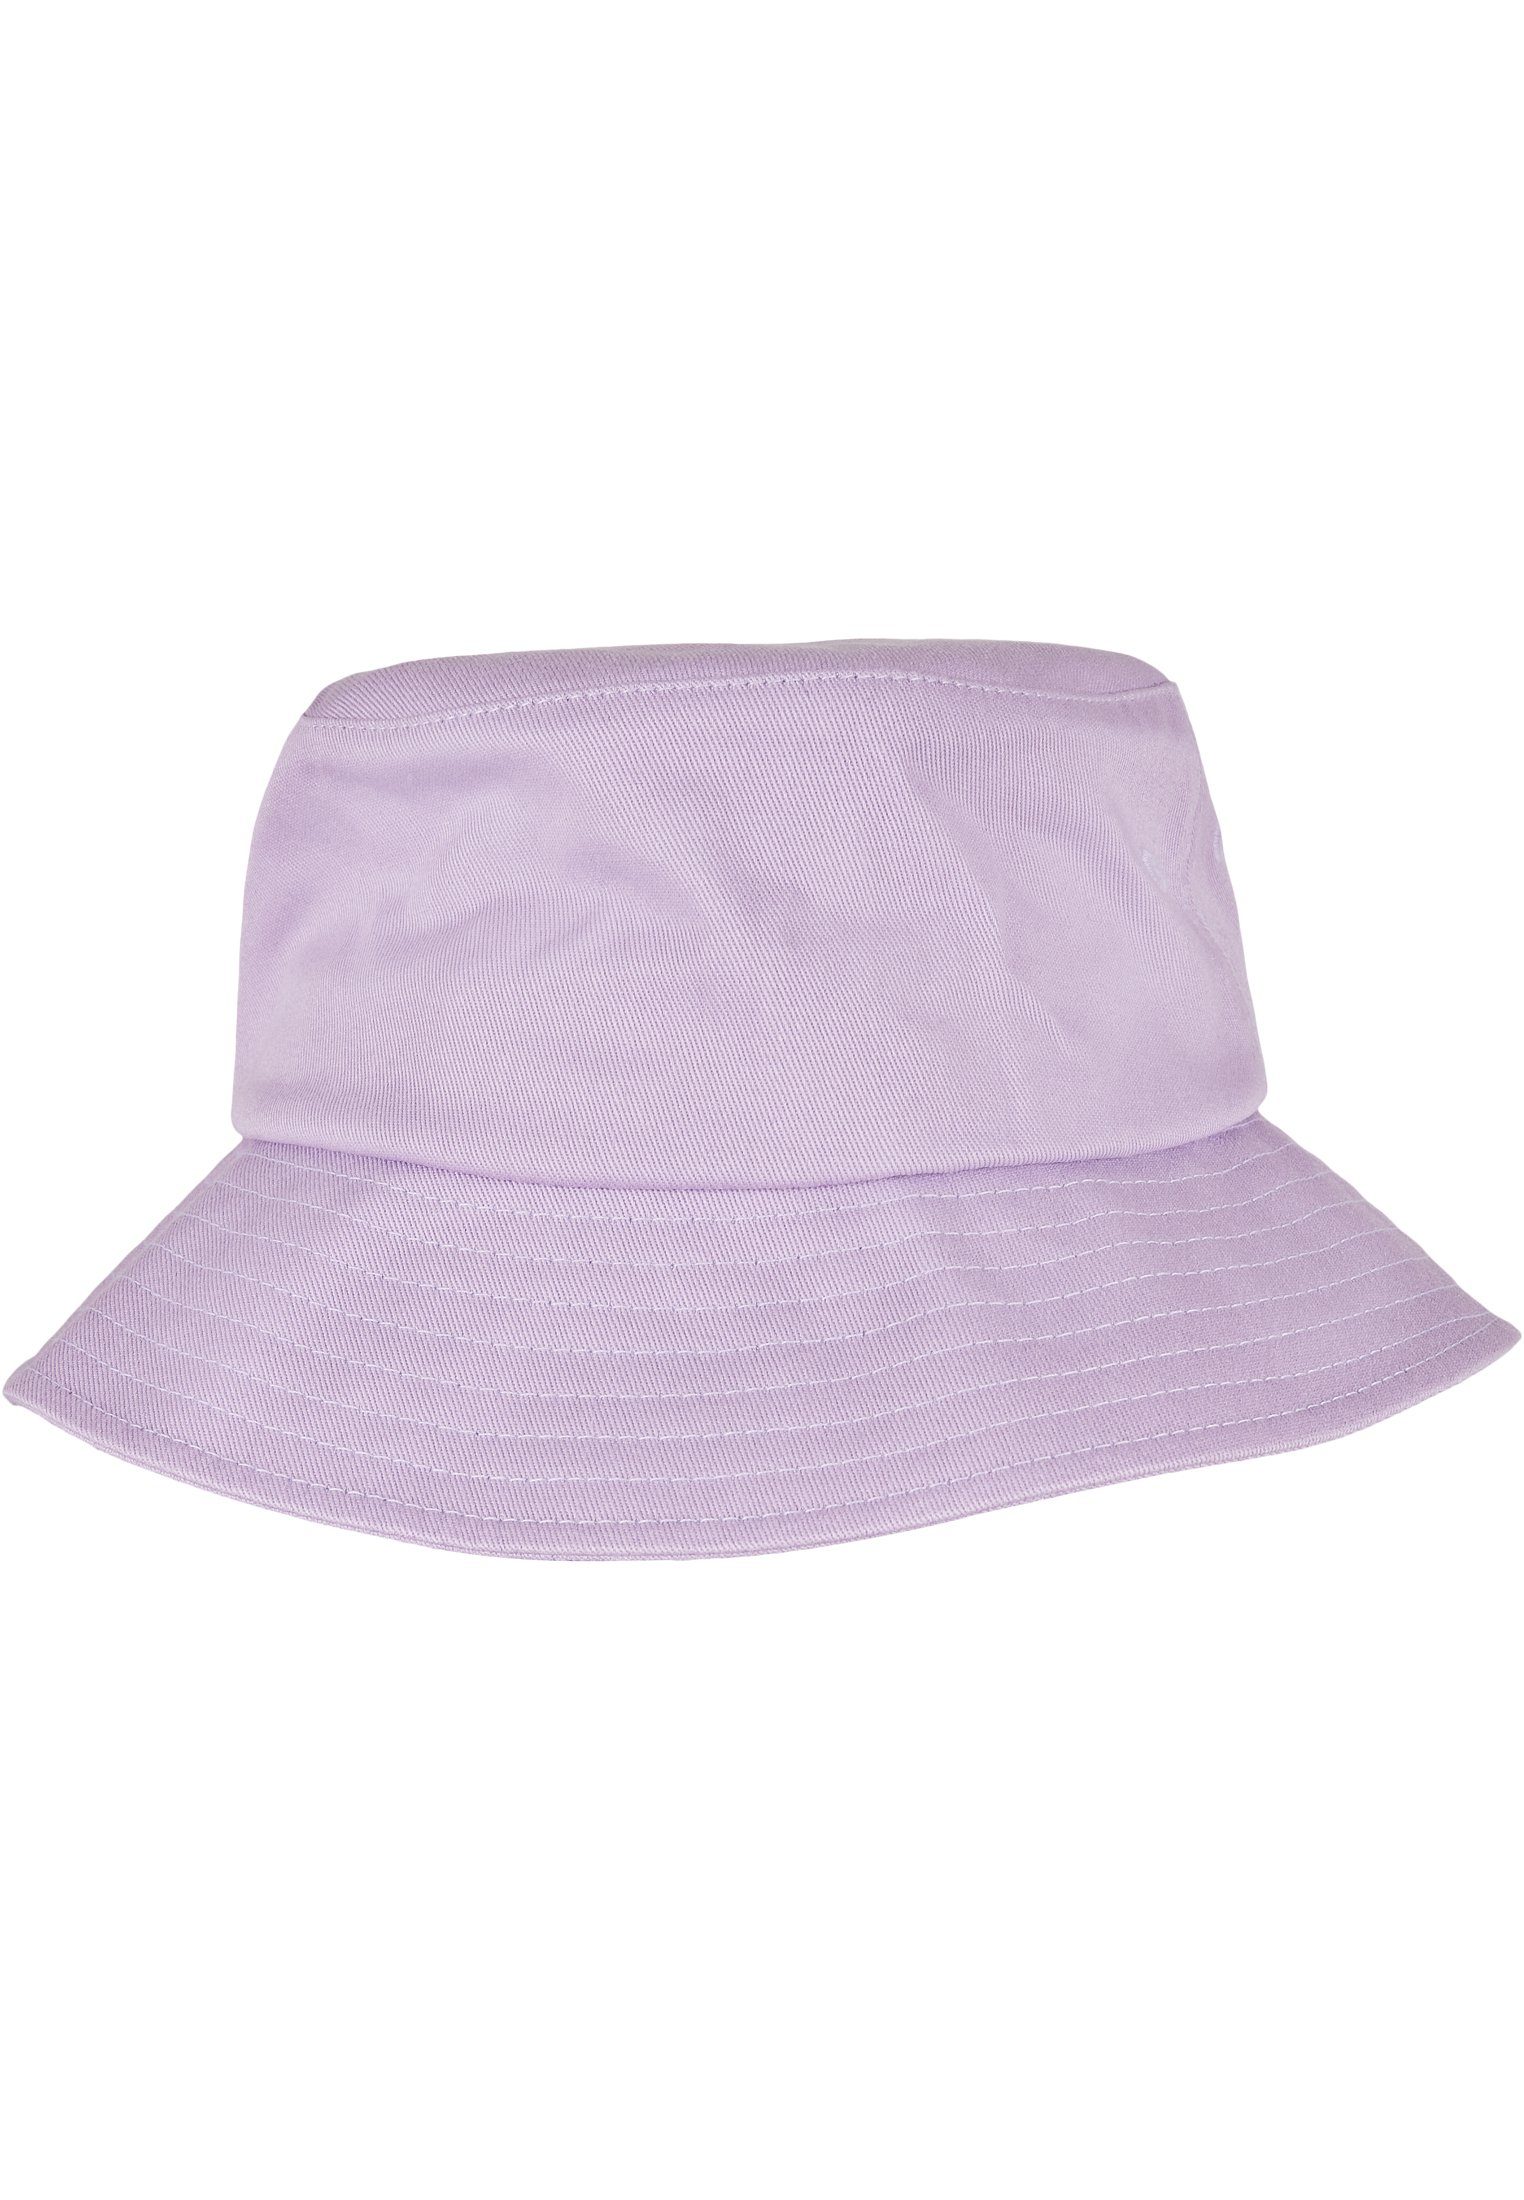 Cap Flex lilac Cotton Twill Accessoires Hat Flexfit Flexfit Bucket